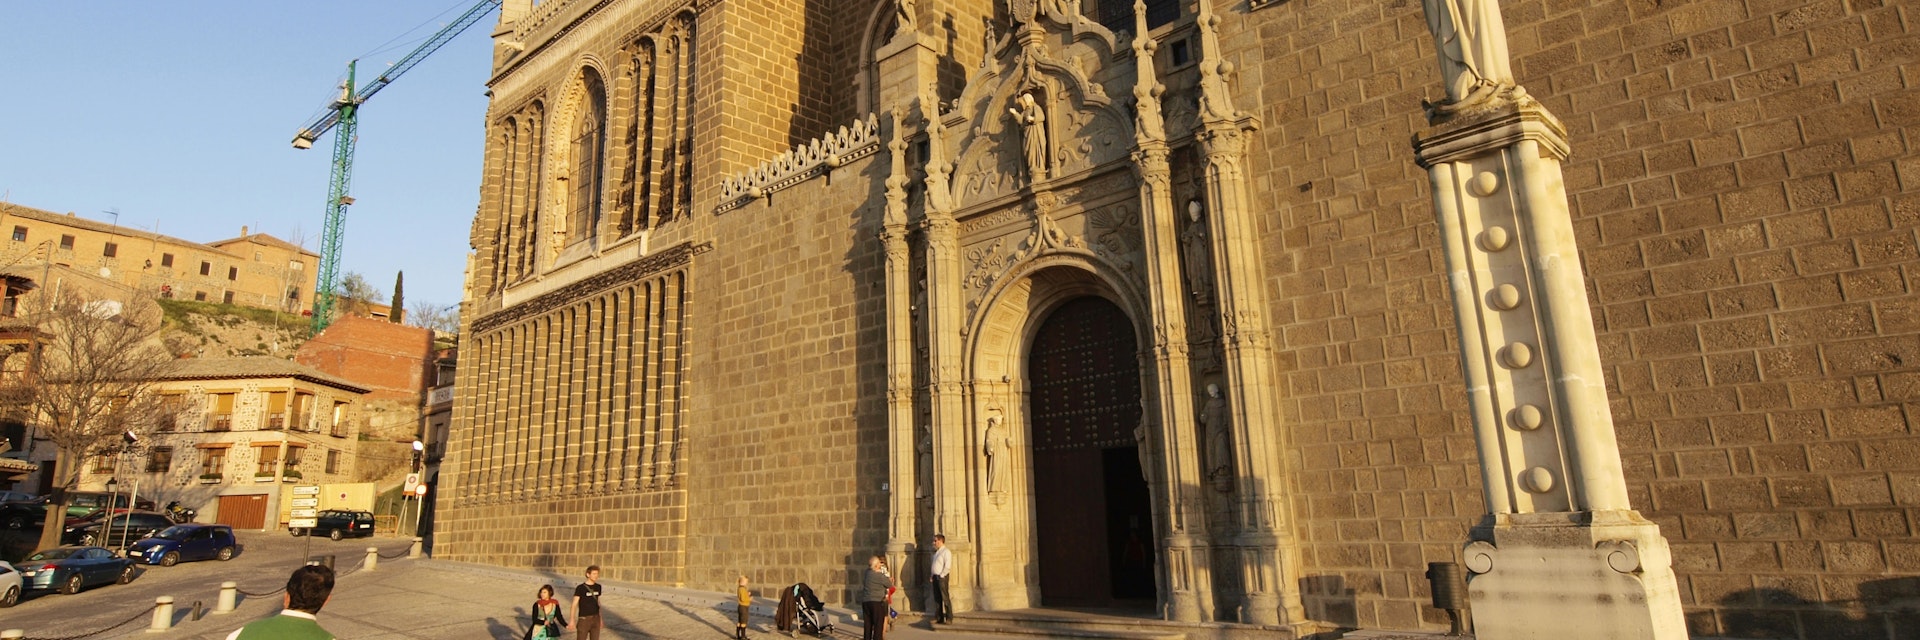 Monasterio de San Juan de los Reyes. Toledo, Castilla_La Mancha, Espana